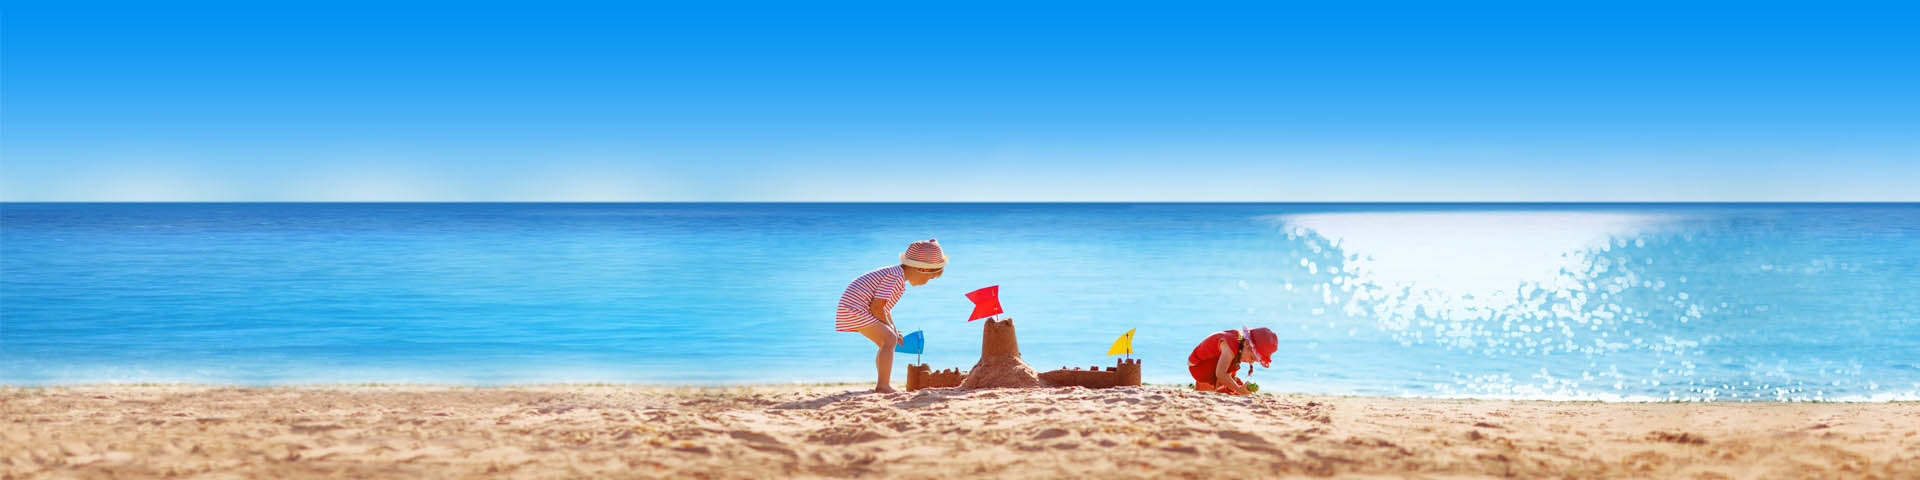 Kinderen spelen op het strand met een azuurblauwe zee als achtergrond